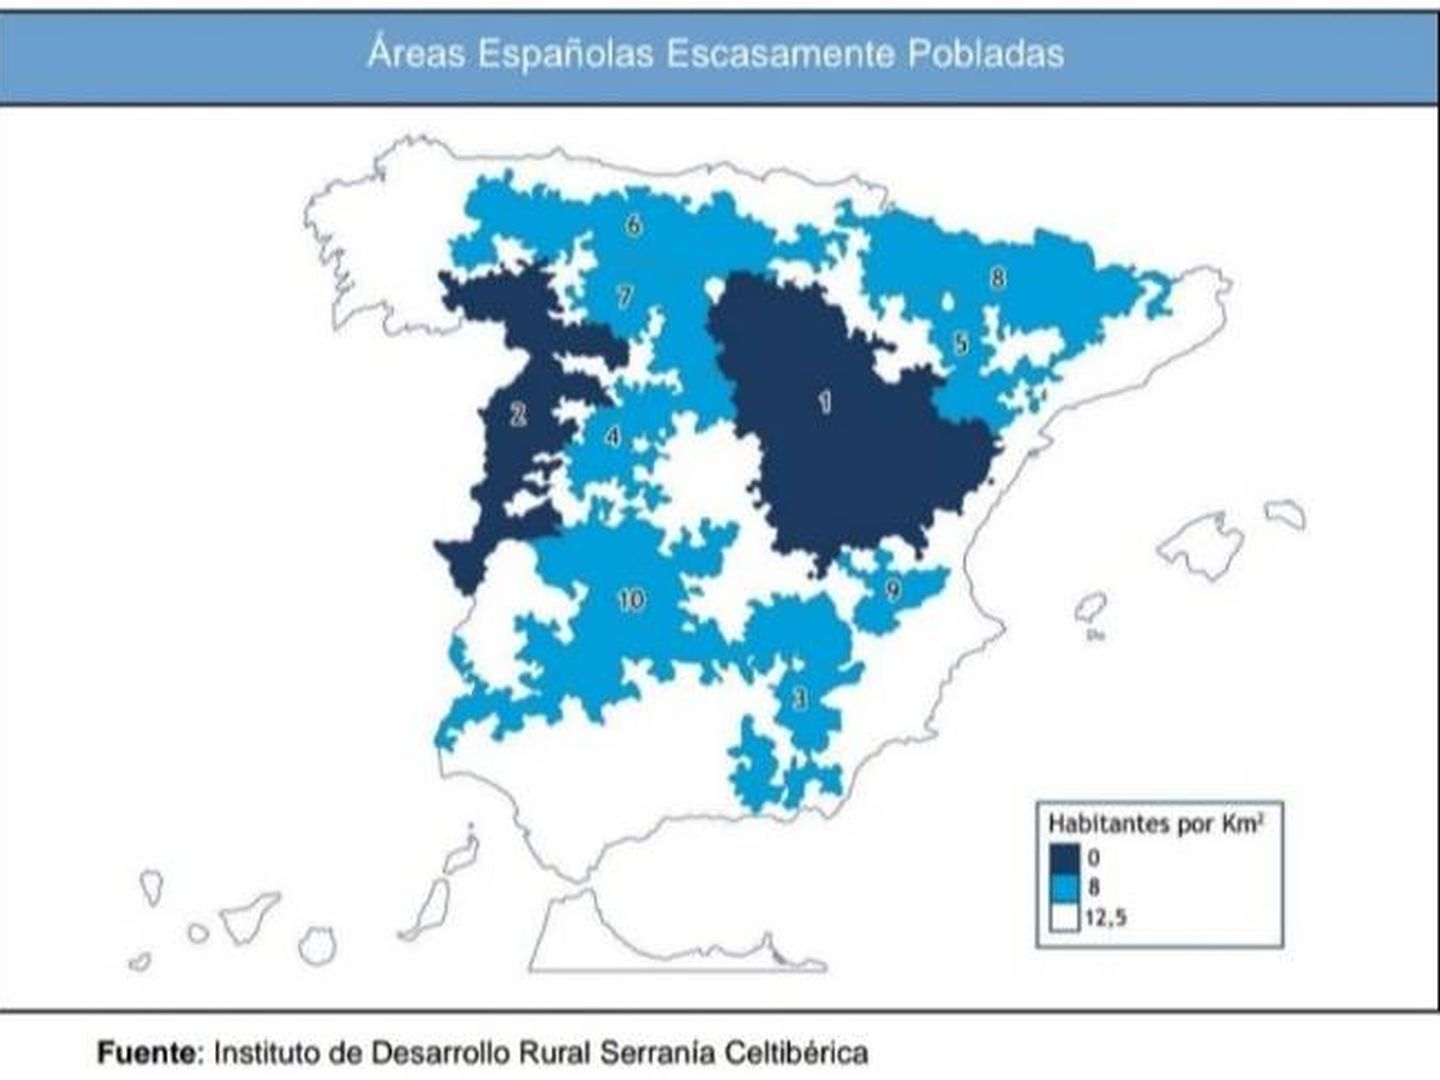 Mapa de despoblación elaborado por Serranía Celtibérica.